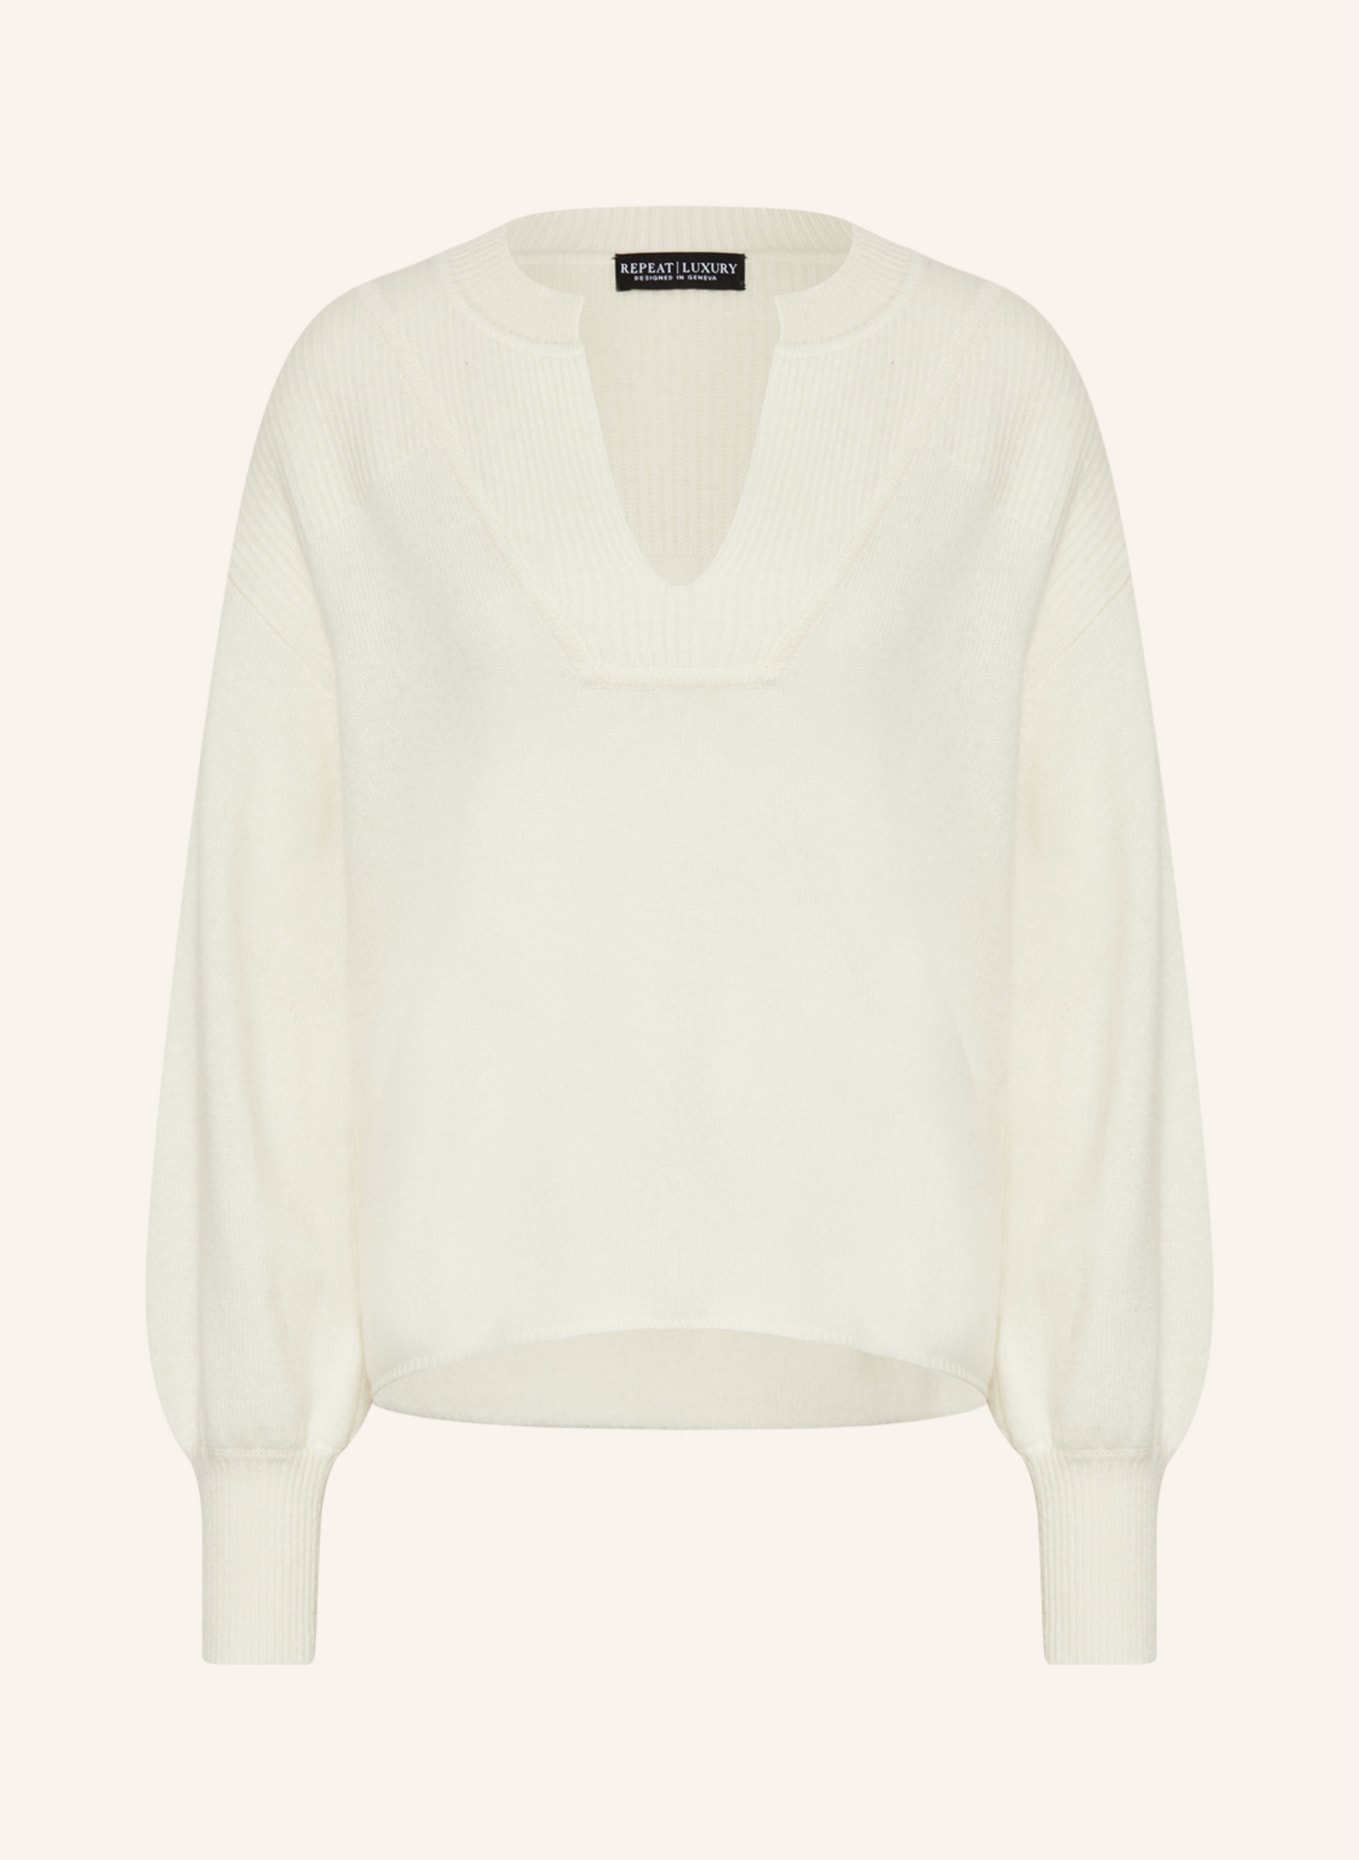 REPEAT Cashmere-Pullover, Farbe: ECRU (Bild 1)